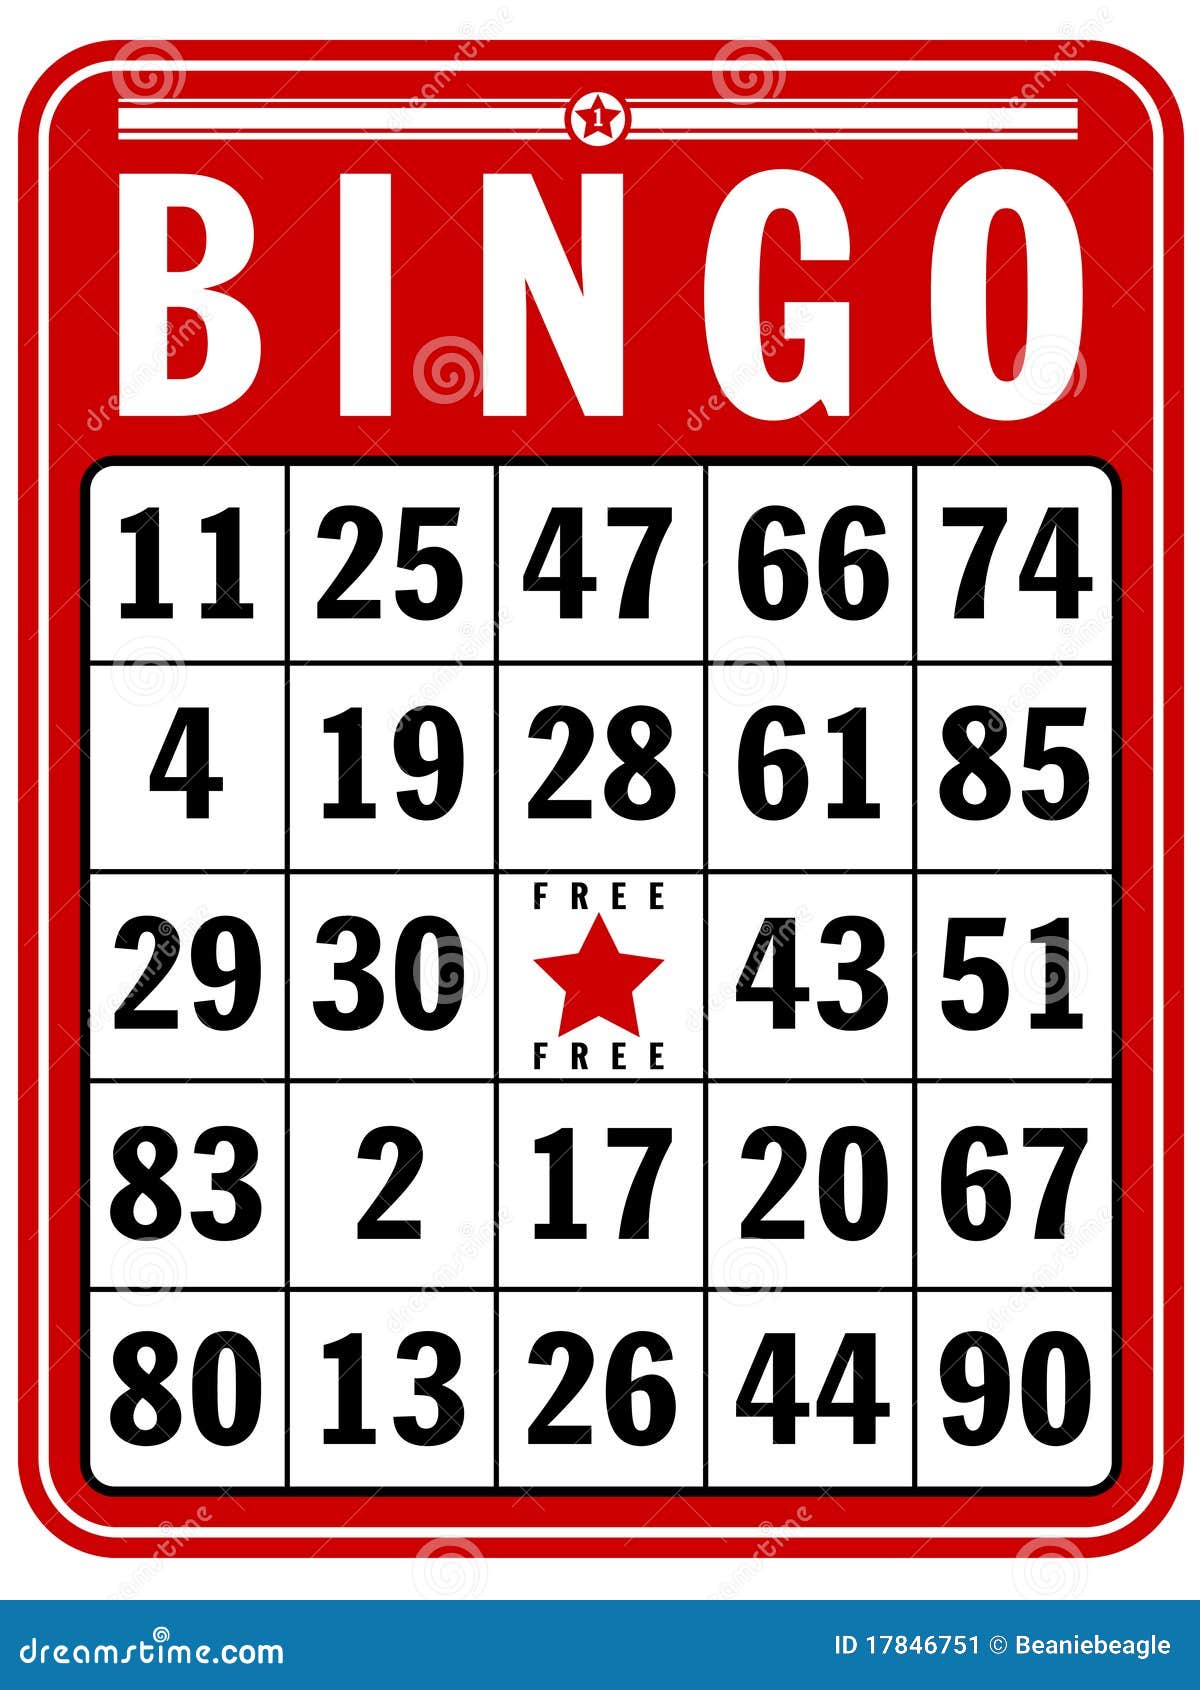 bingo score card